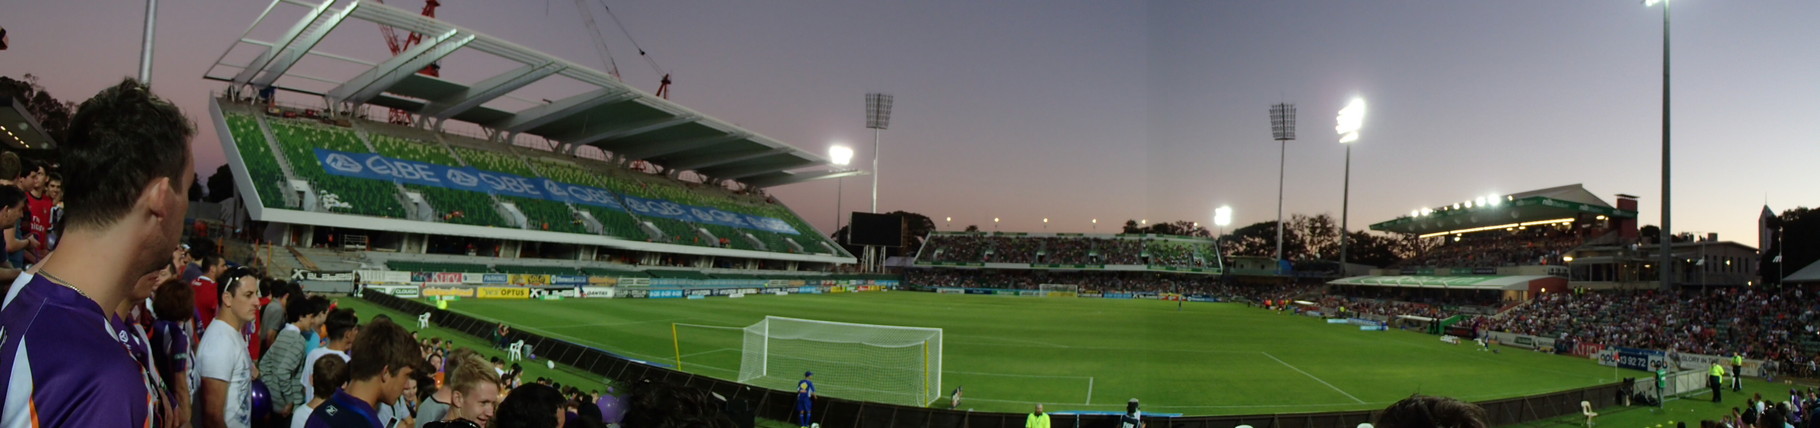 Fußballspiel zwischen Perth Glory - Sydney FC